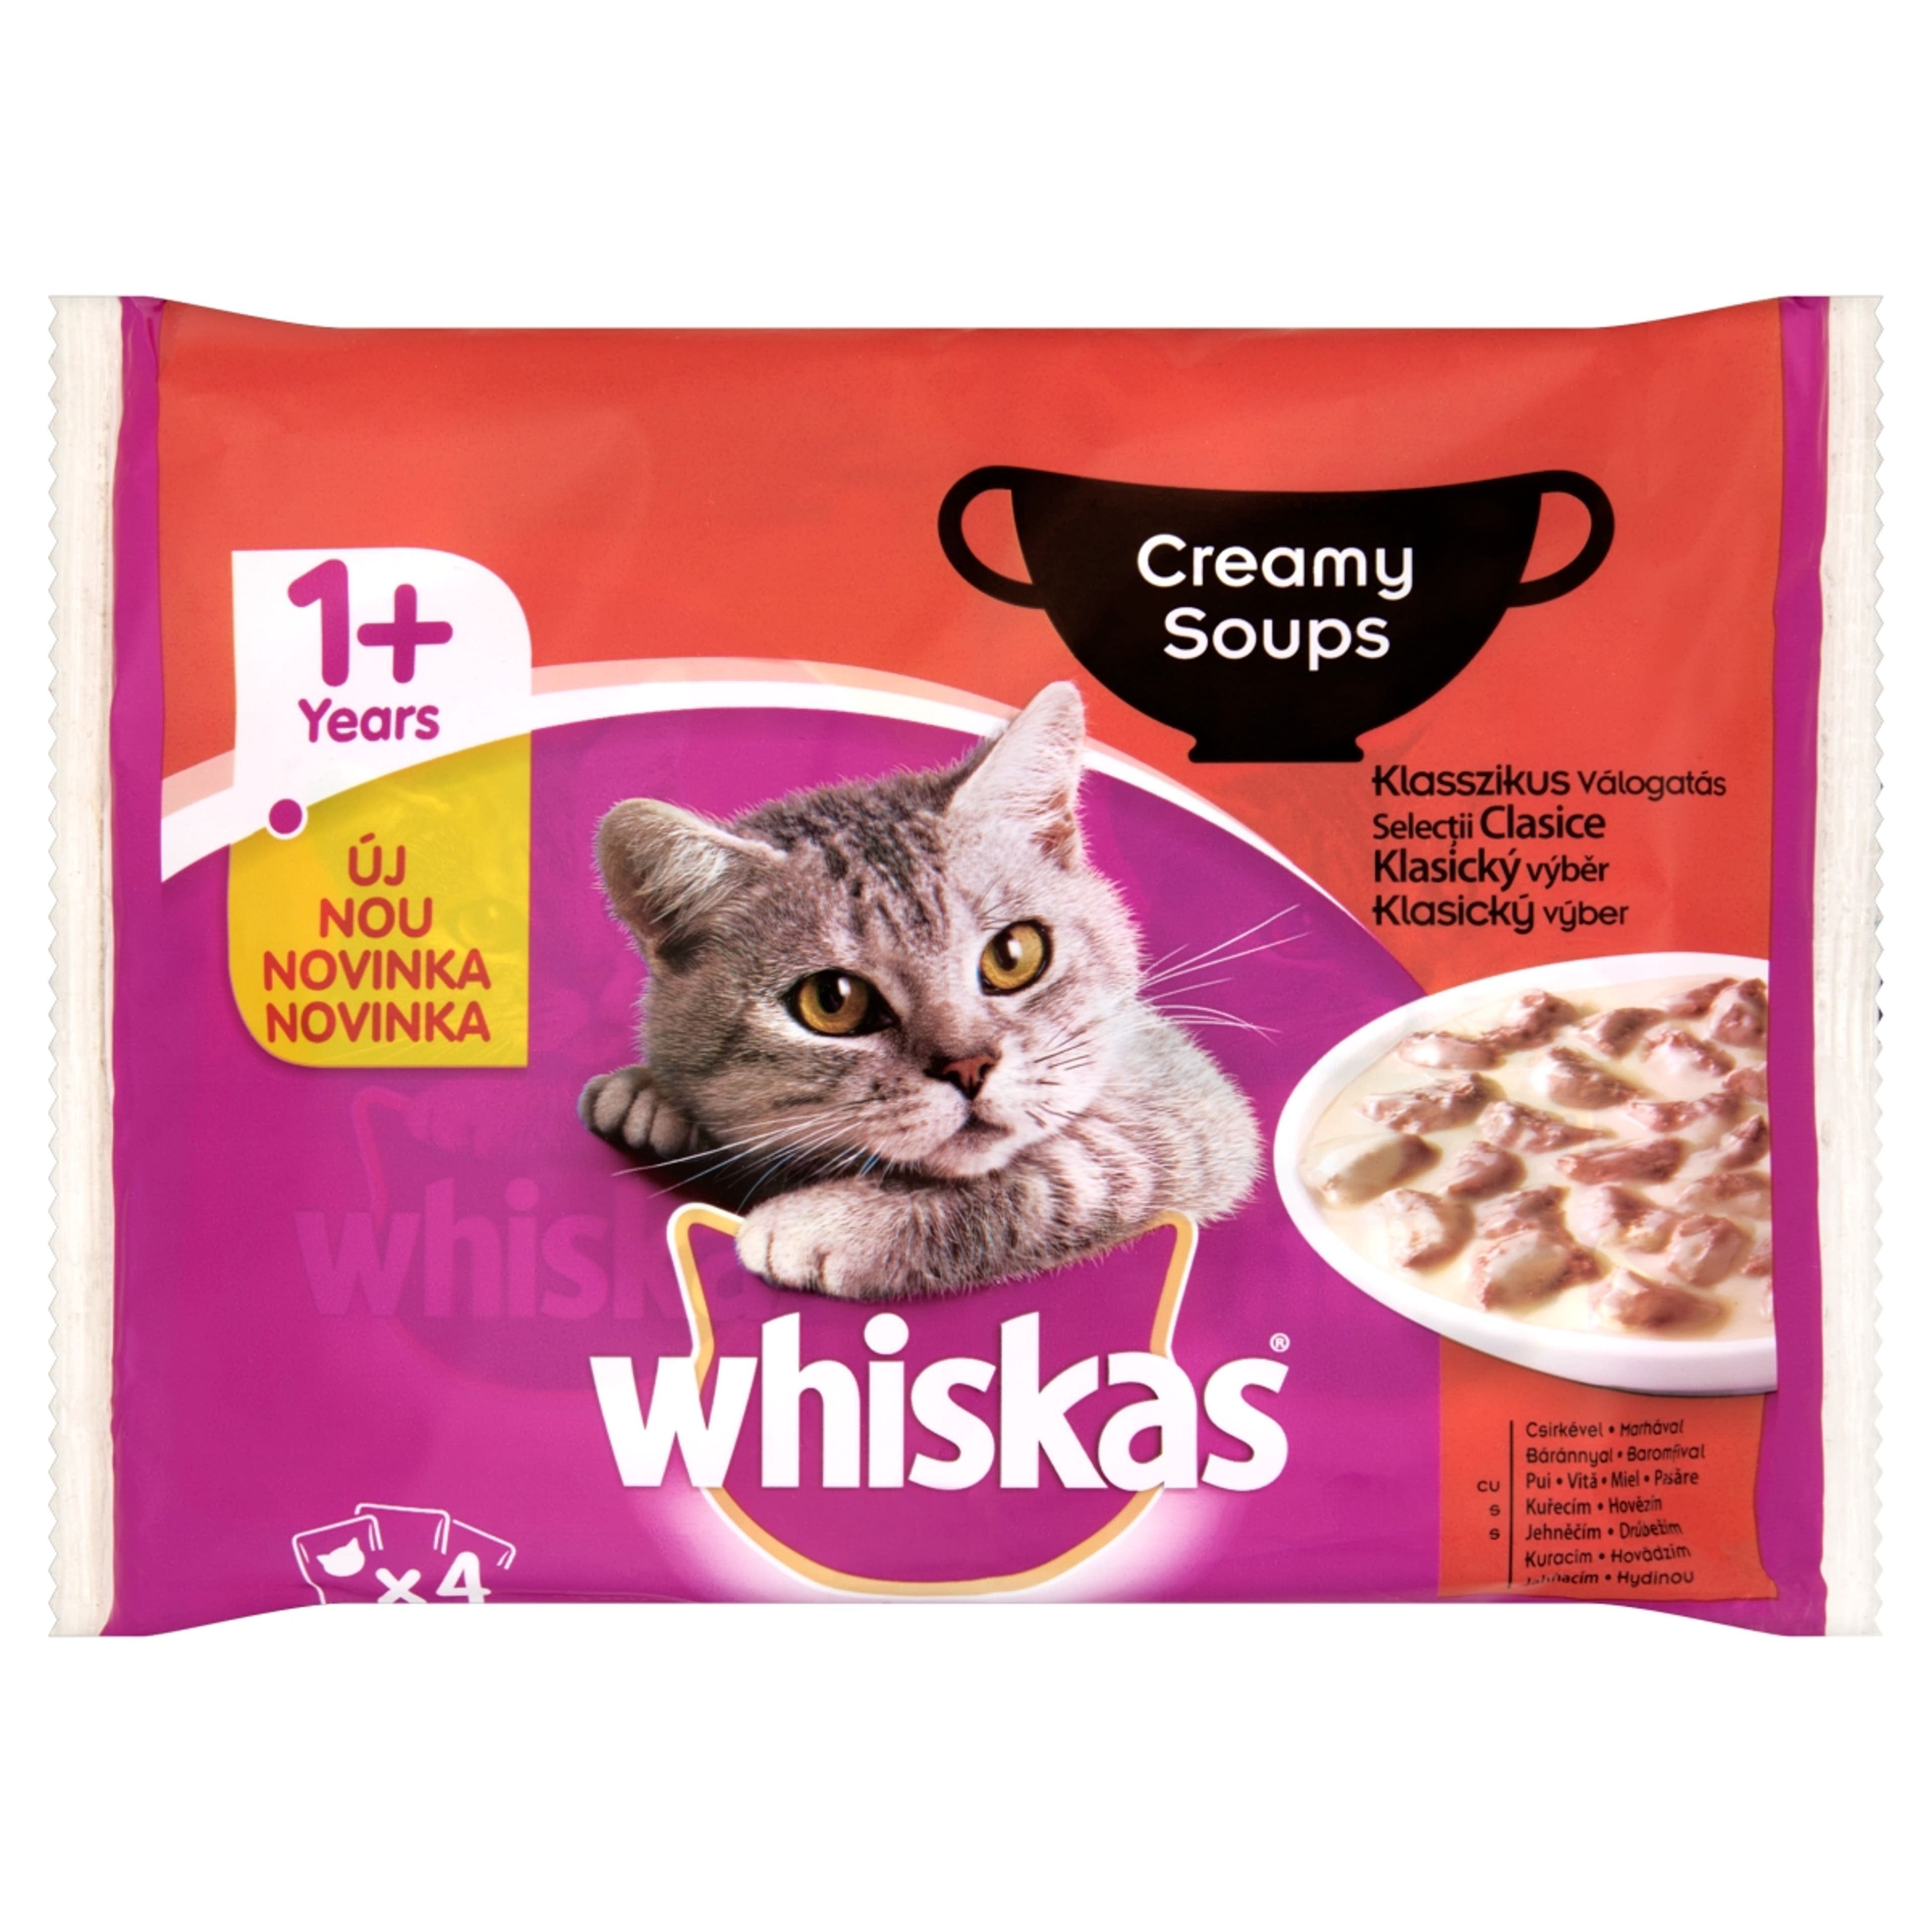 Whiskas 1+ teljes értékű alutasak macskáknak, klasszikus válogatás krémes szószban (4x85 g) -  340 g